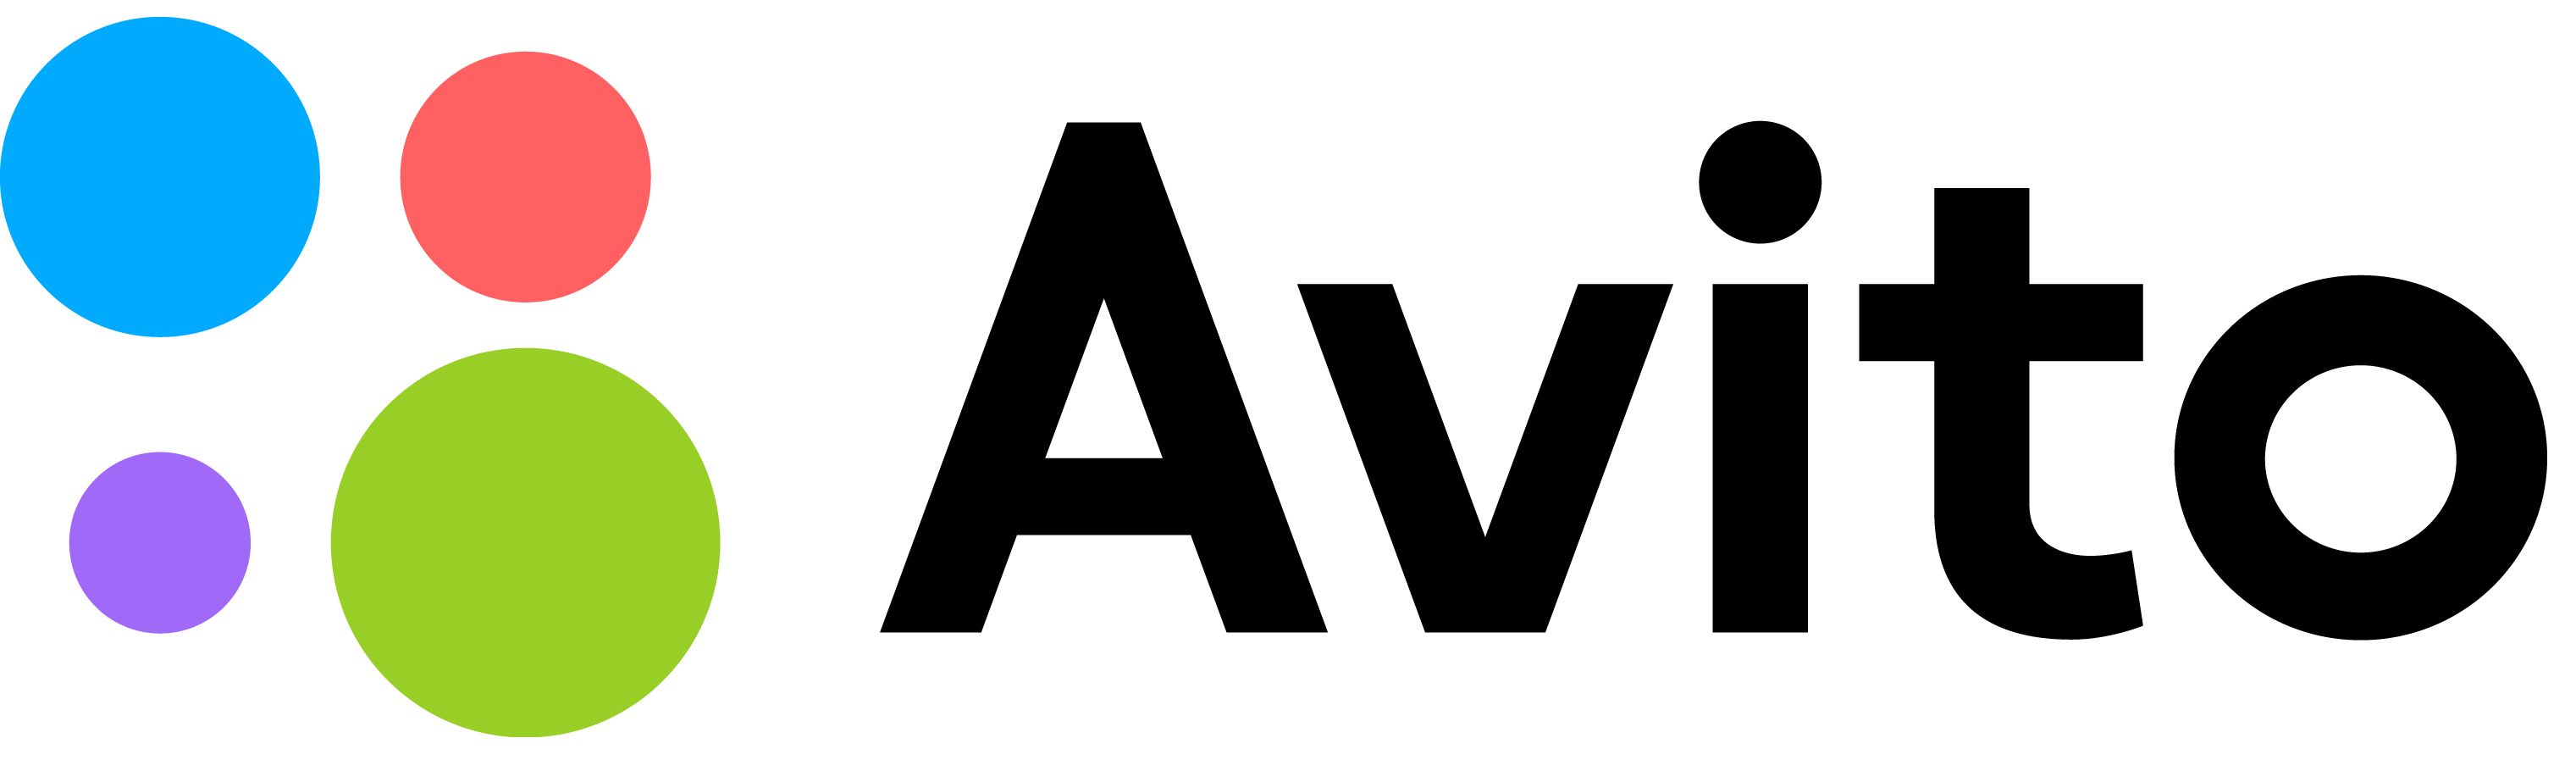 Karapari com. Авито логотип. Логотип авито на прозрачном фоне. Авито маркетплейс. Avito значок.